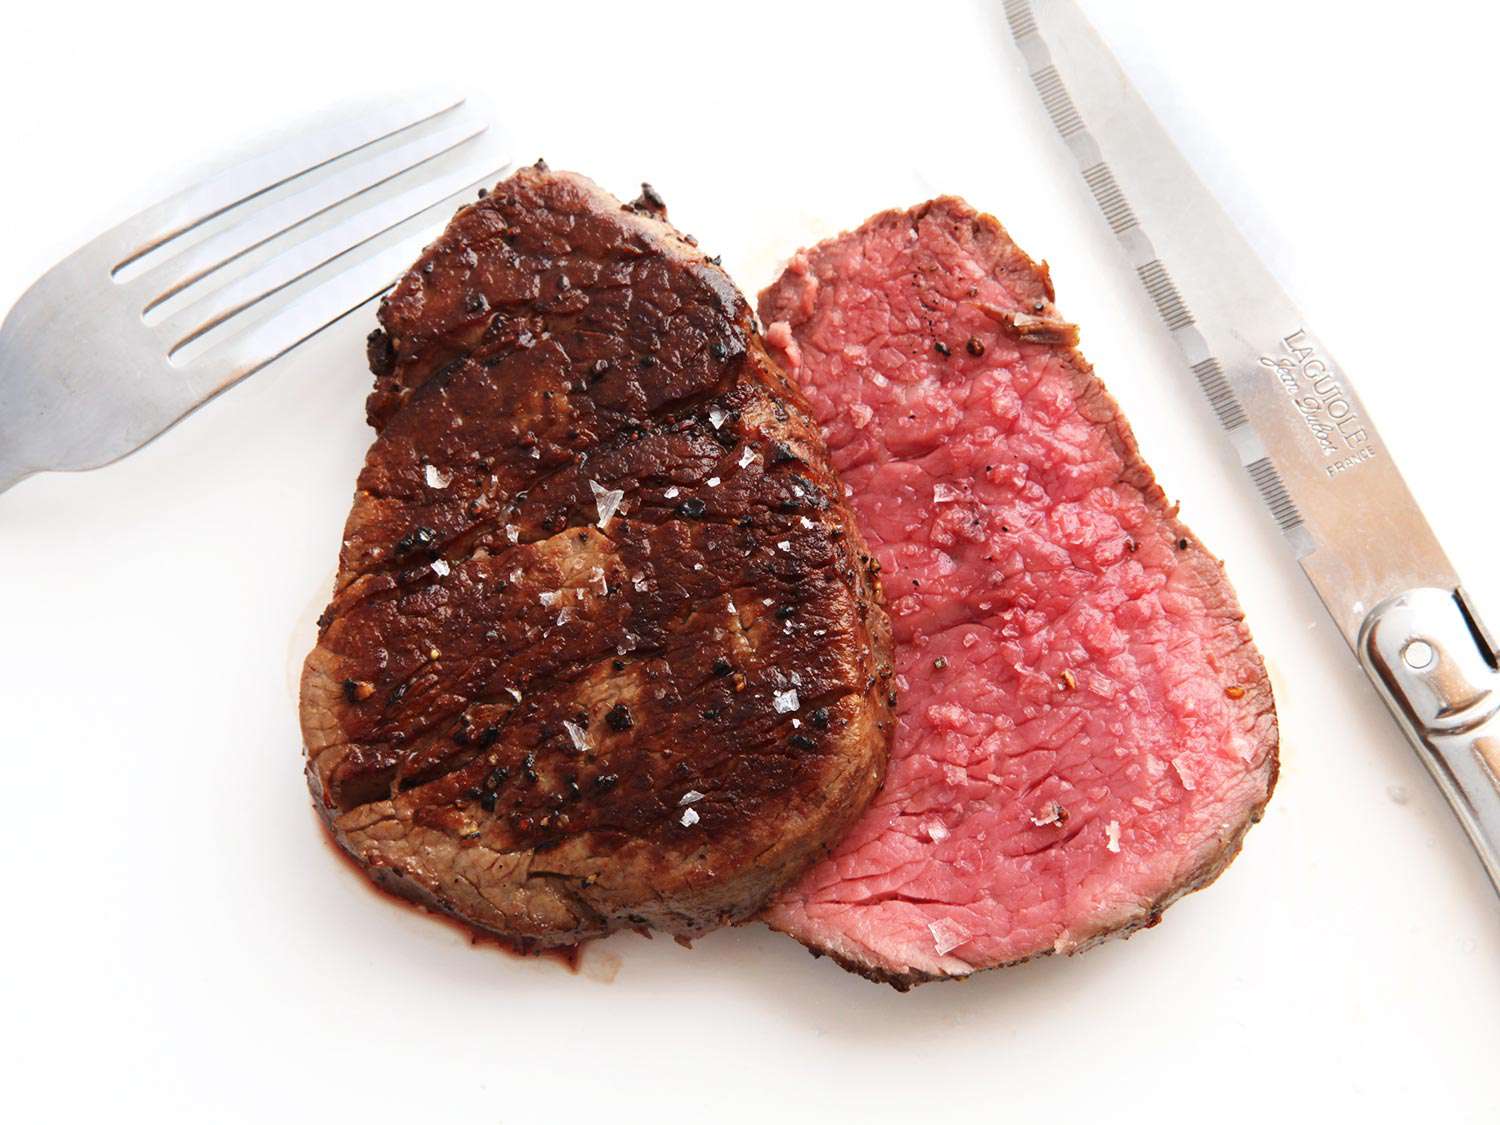 Anova-Steak-Guide-Sous-Vide-Photos42-split-tenderloin-with-knife.jpg